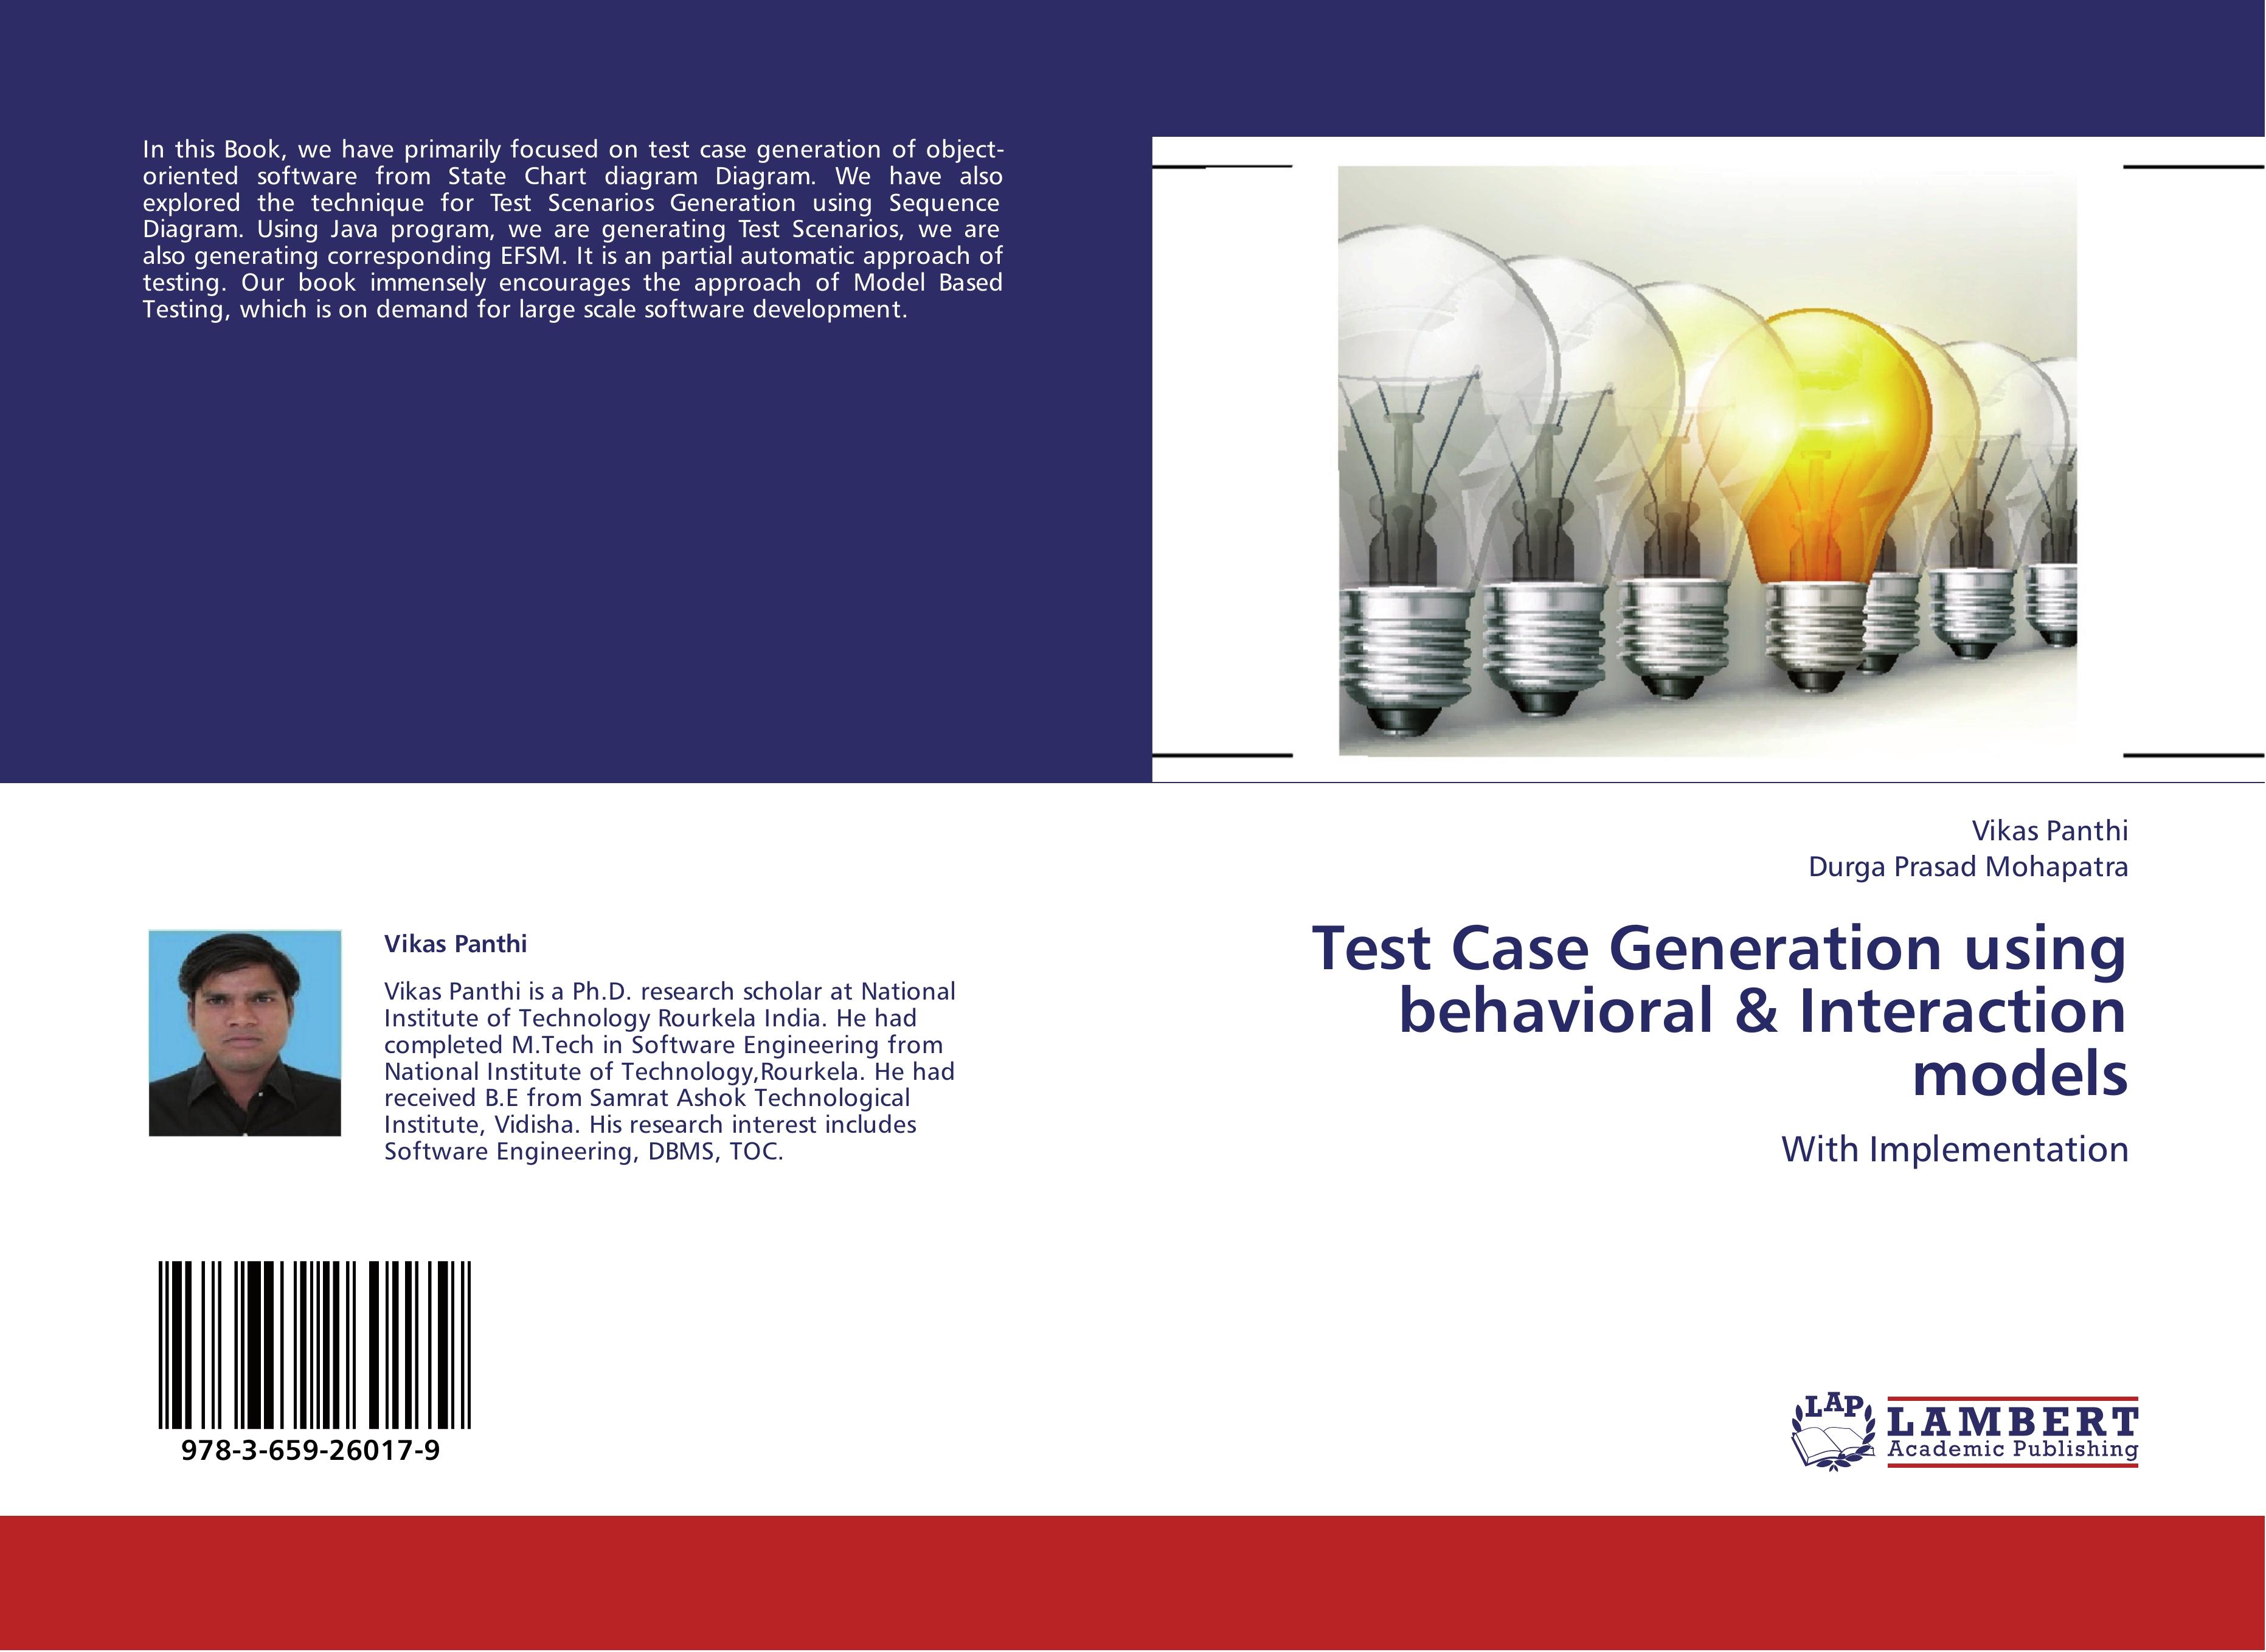 Test Case Generation using behavioral & Interaction models - Vikas Panthi|Durga Prasad Mohapatra